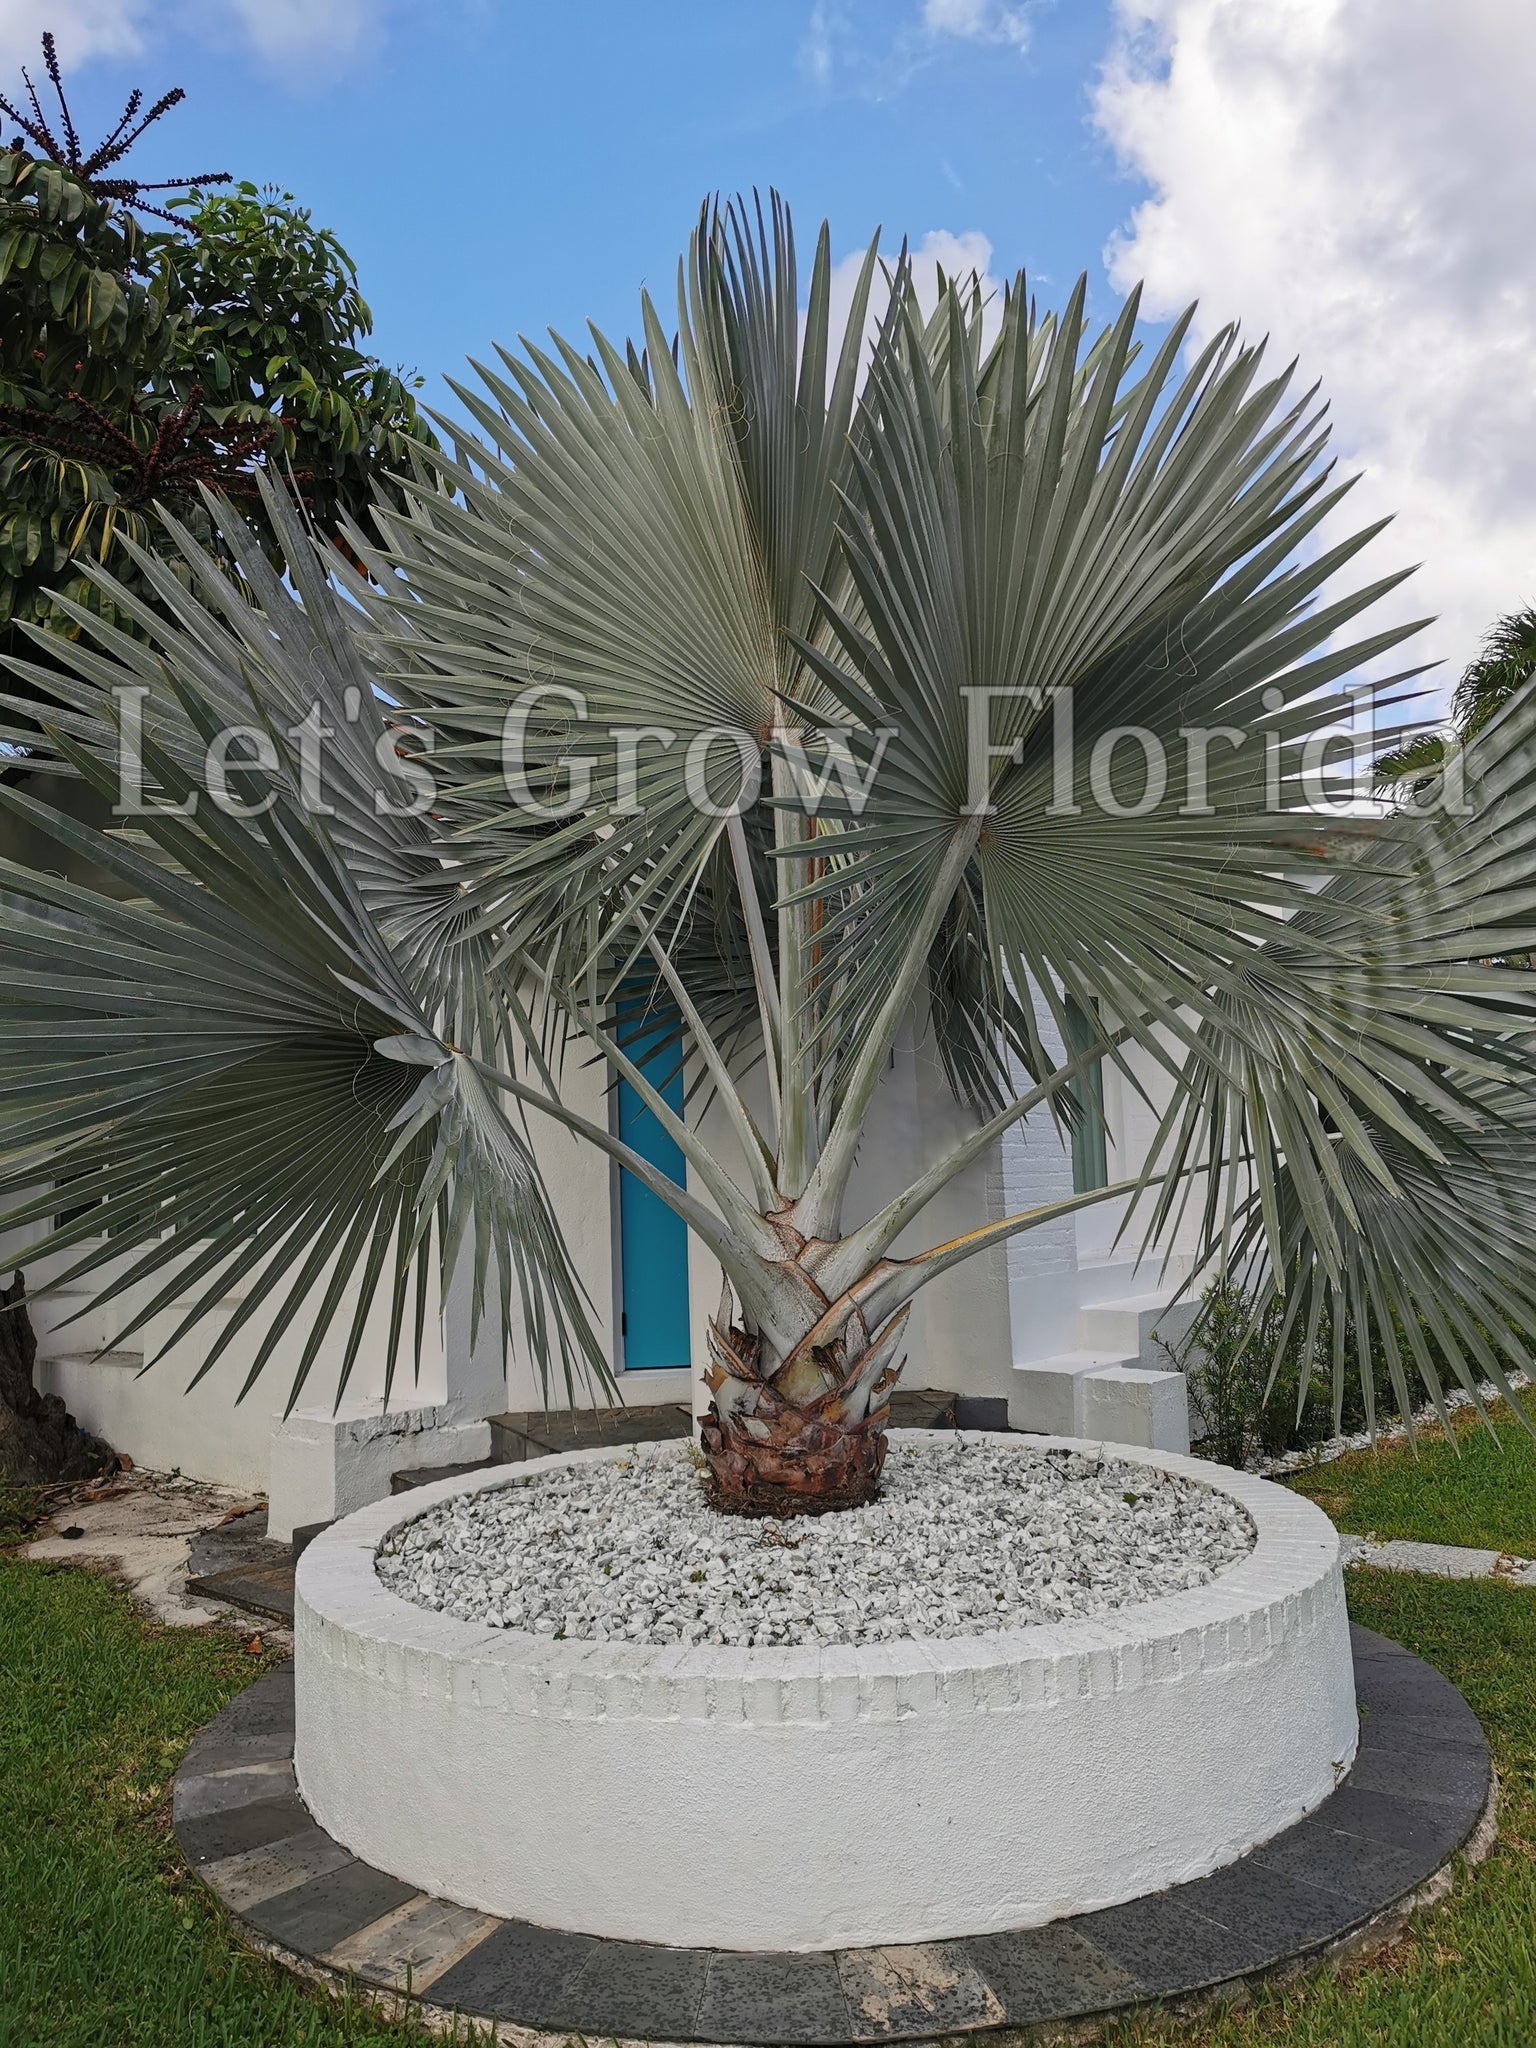 ENH260/ST101: Bismarckia nobilis: Bismarck Palm